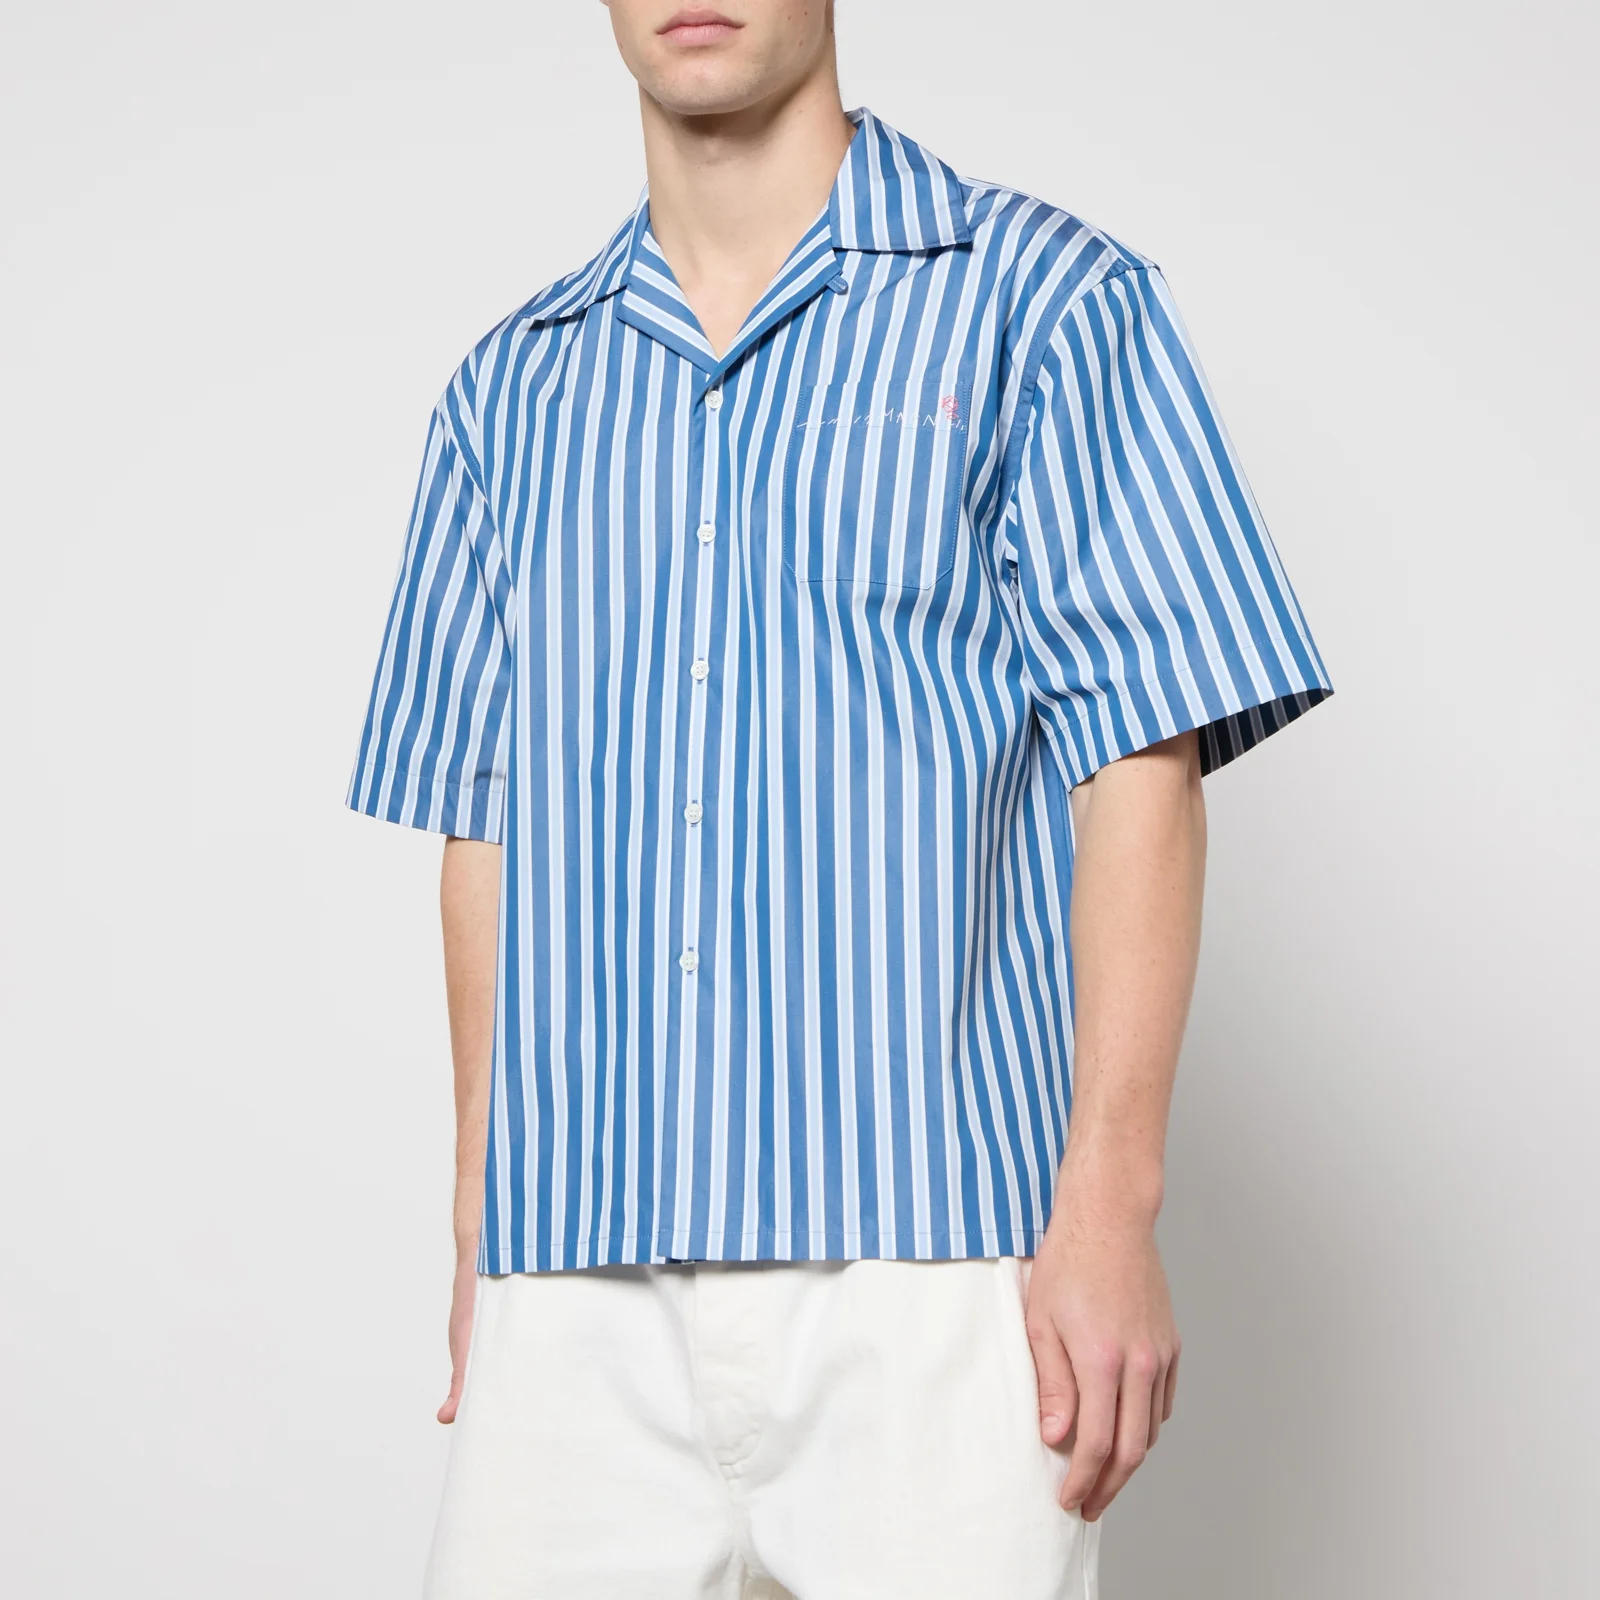 Marni Striped Cotton Shirt Image 1